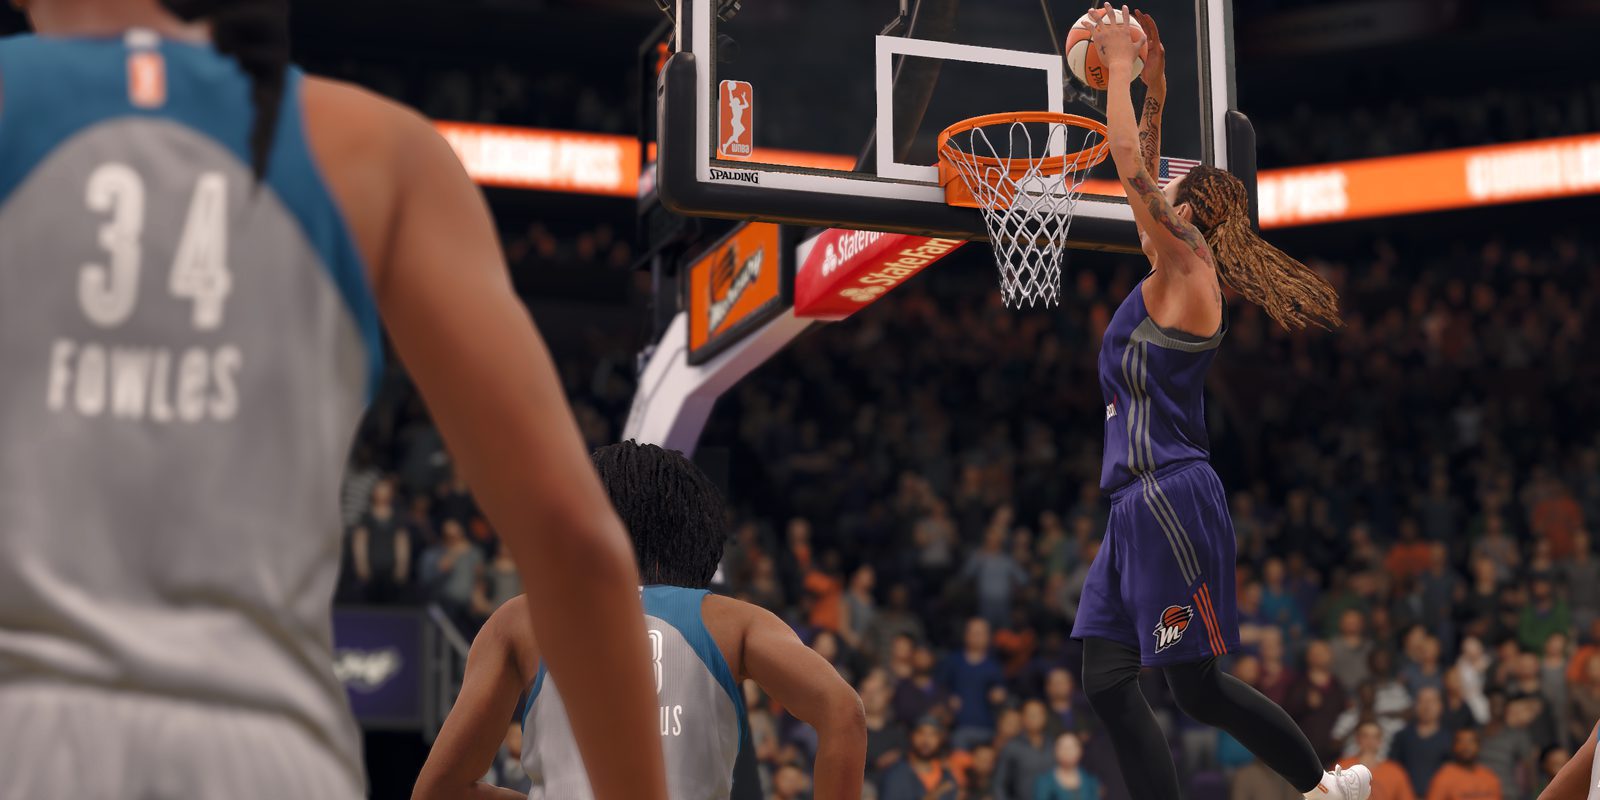 La versión de 'NBA Live 18' de Xbox One no tendrá formato físico en España